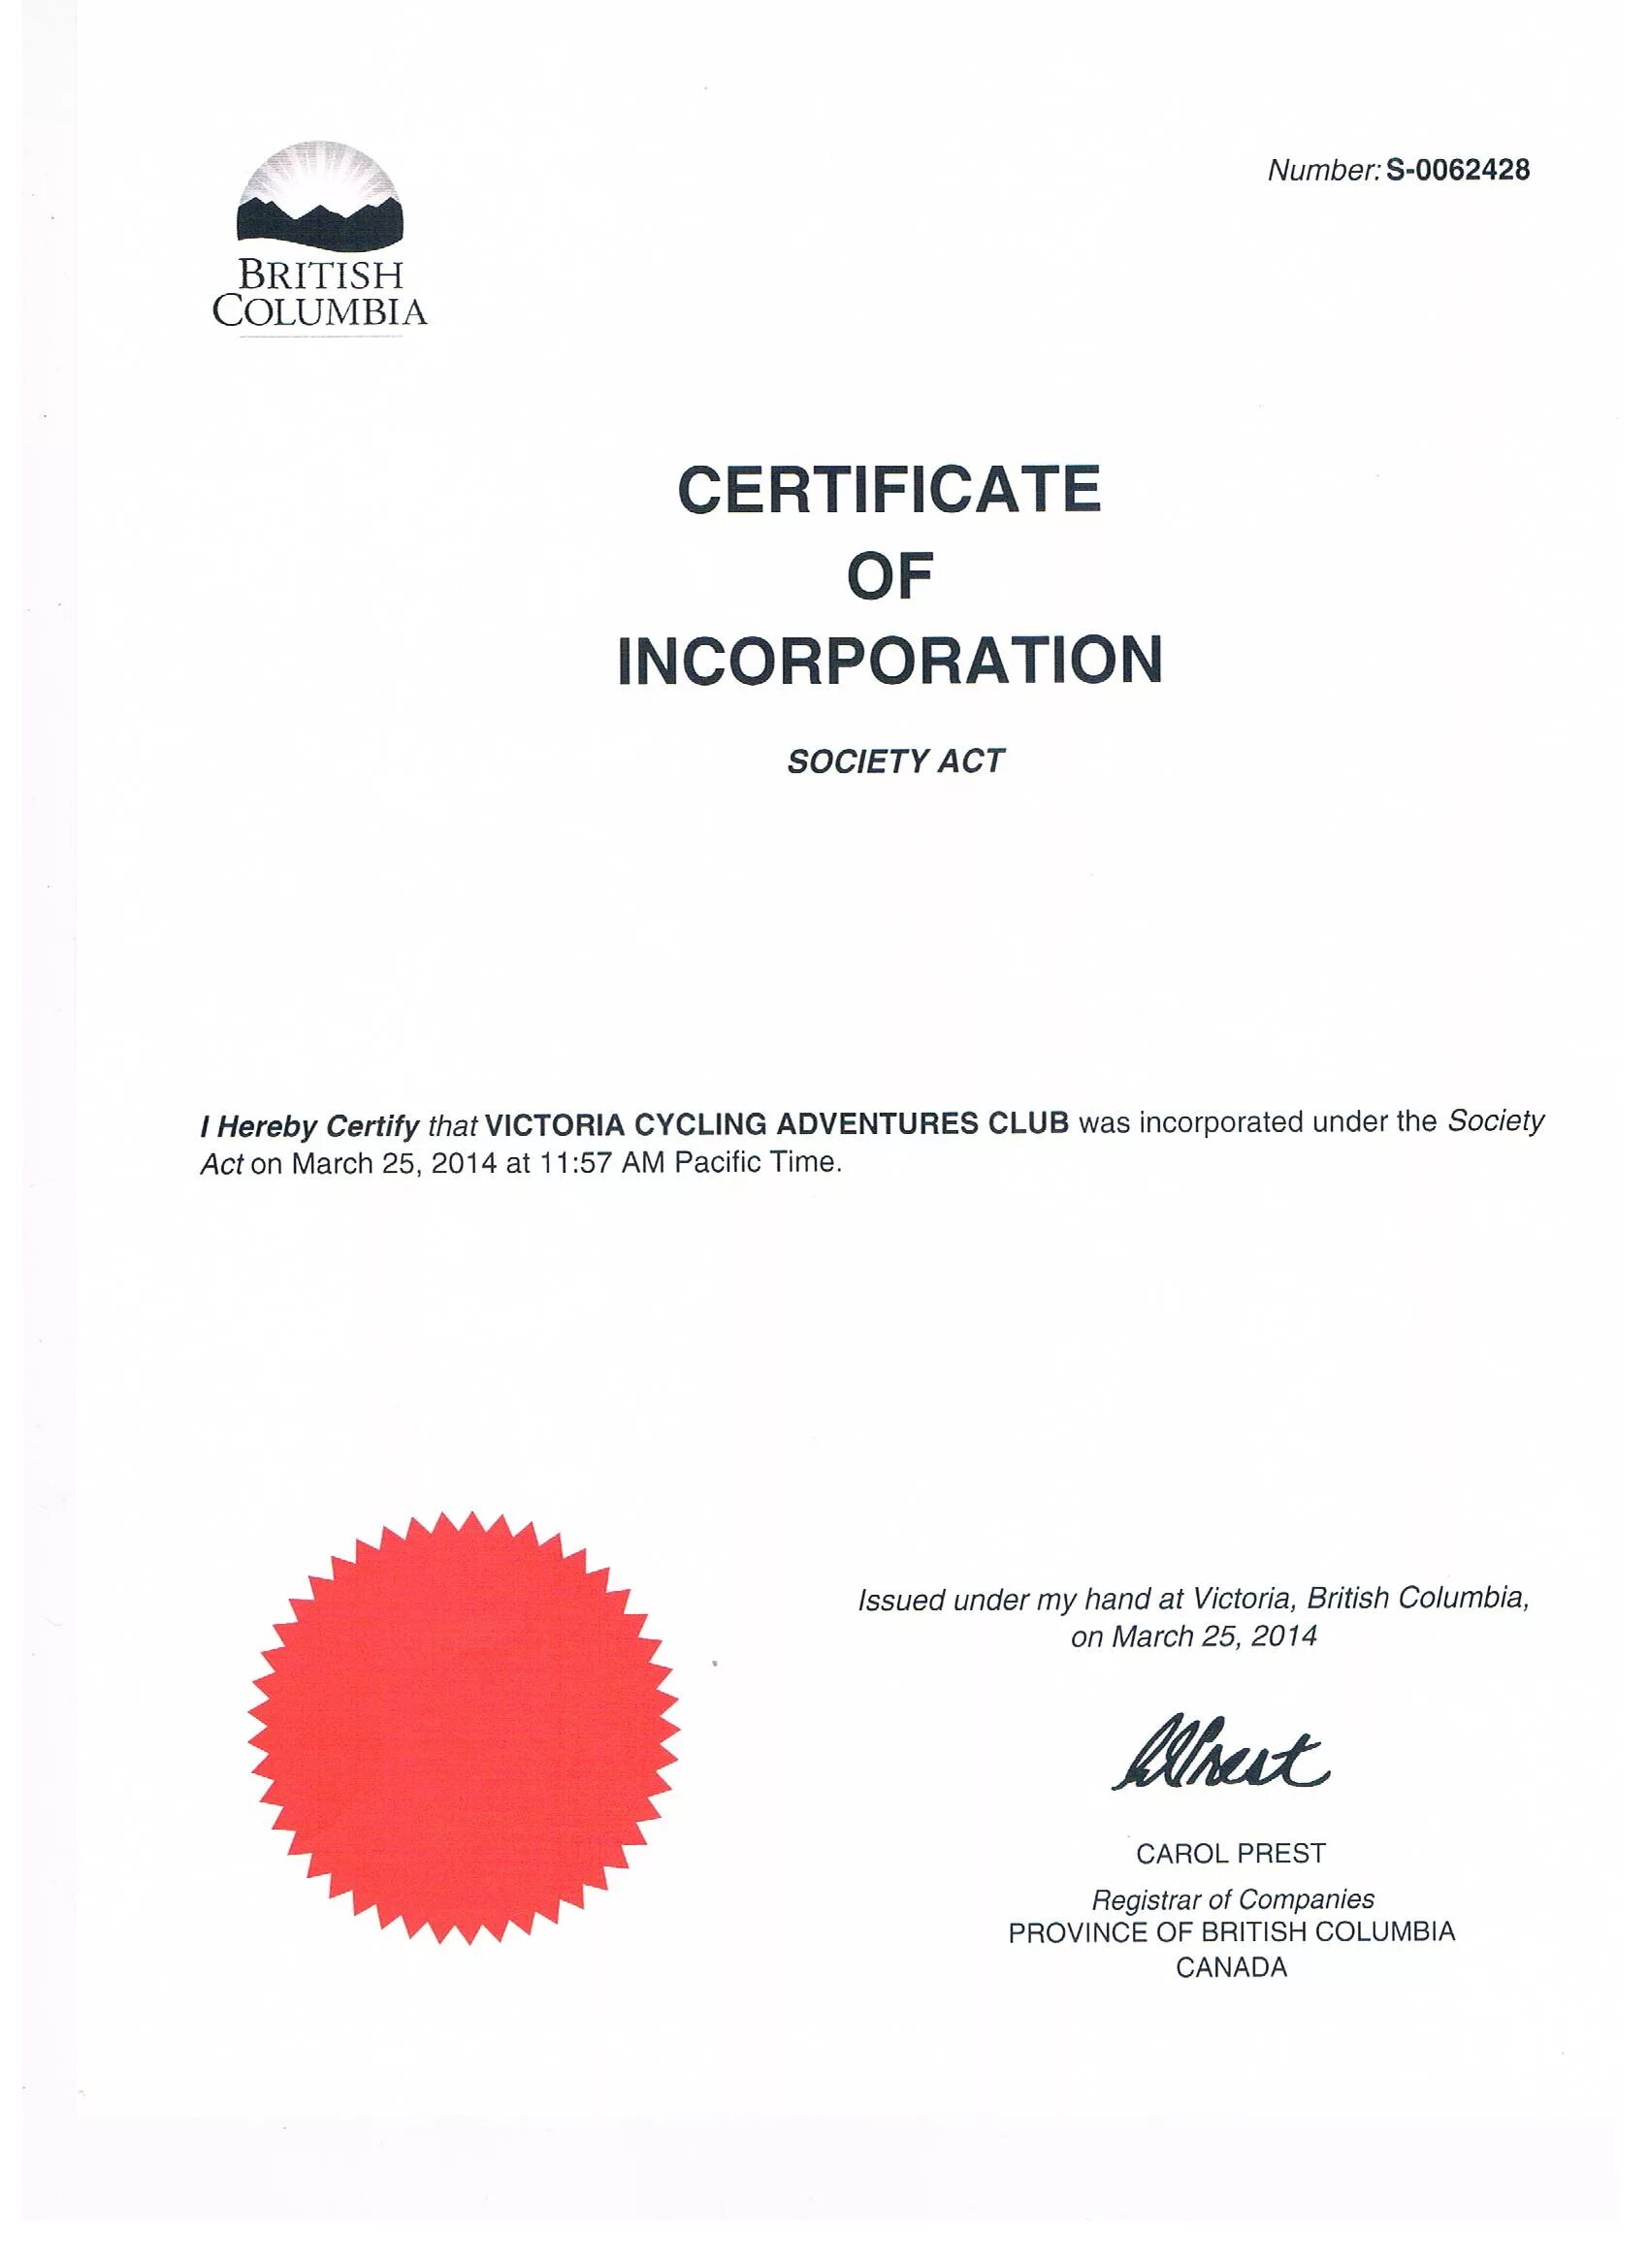 Private certificate. Certificate of Incorporation. Certificate of Incorporation uk. Certificate of Incorporation Cyprus. Образец Certificate of Incorporation.